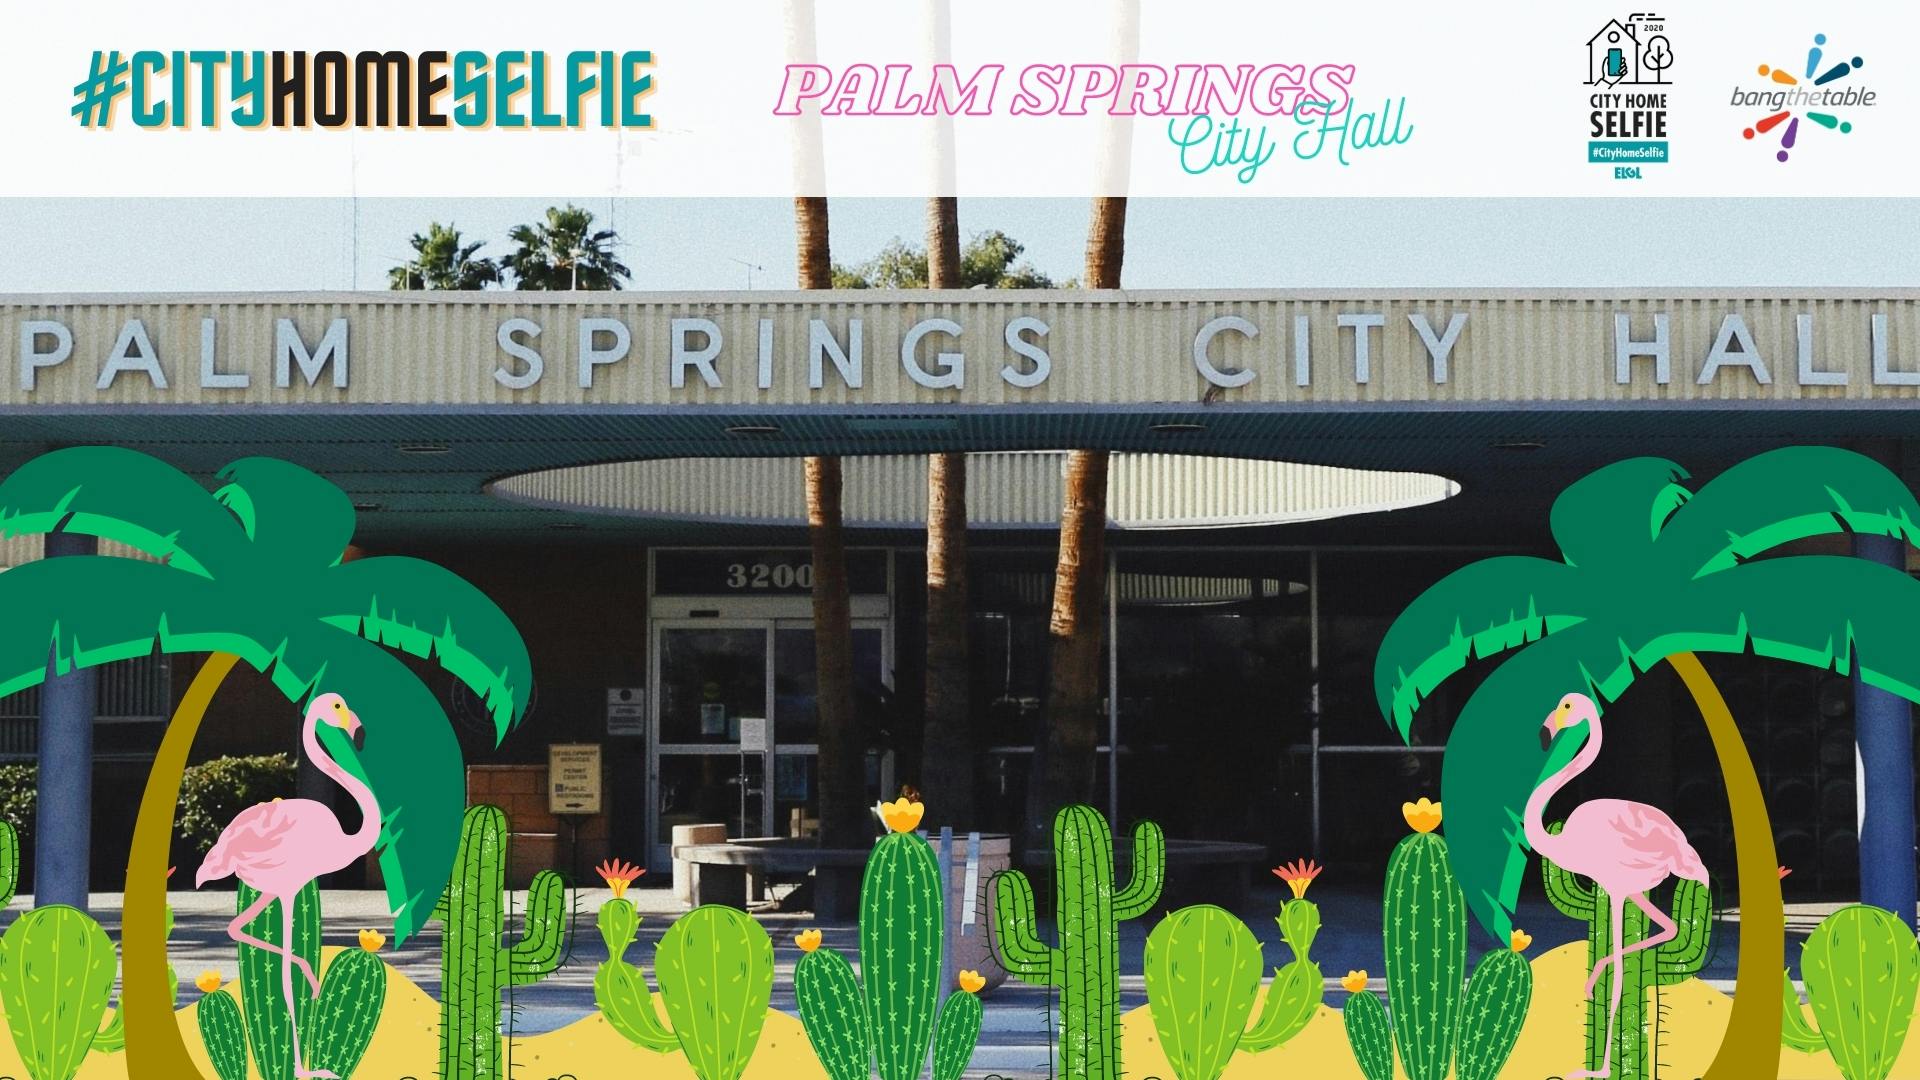 _#cityhomeselfie Palm Springs.jpg